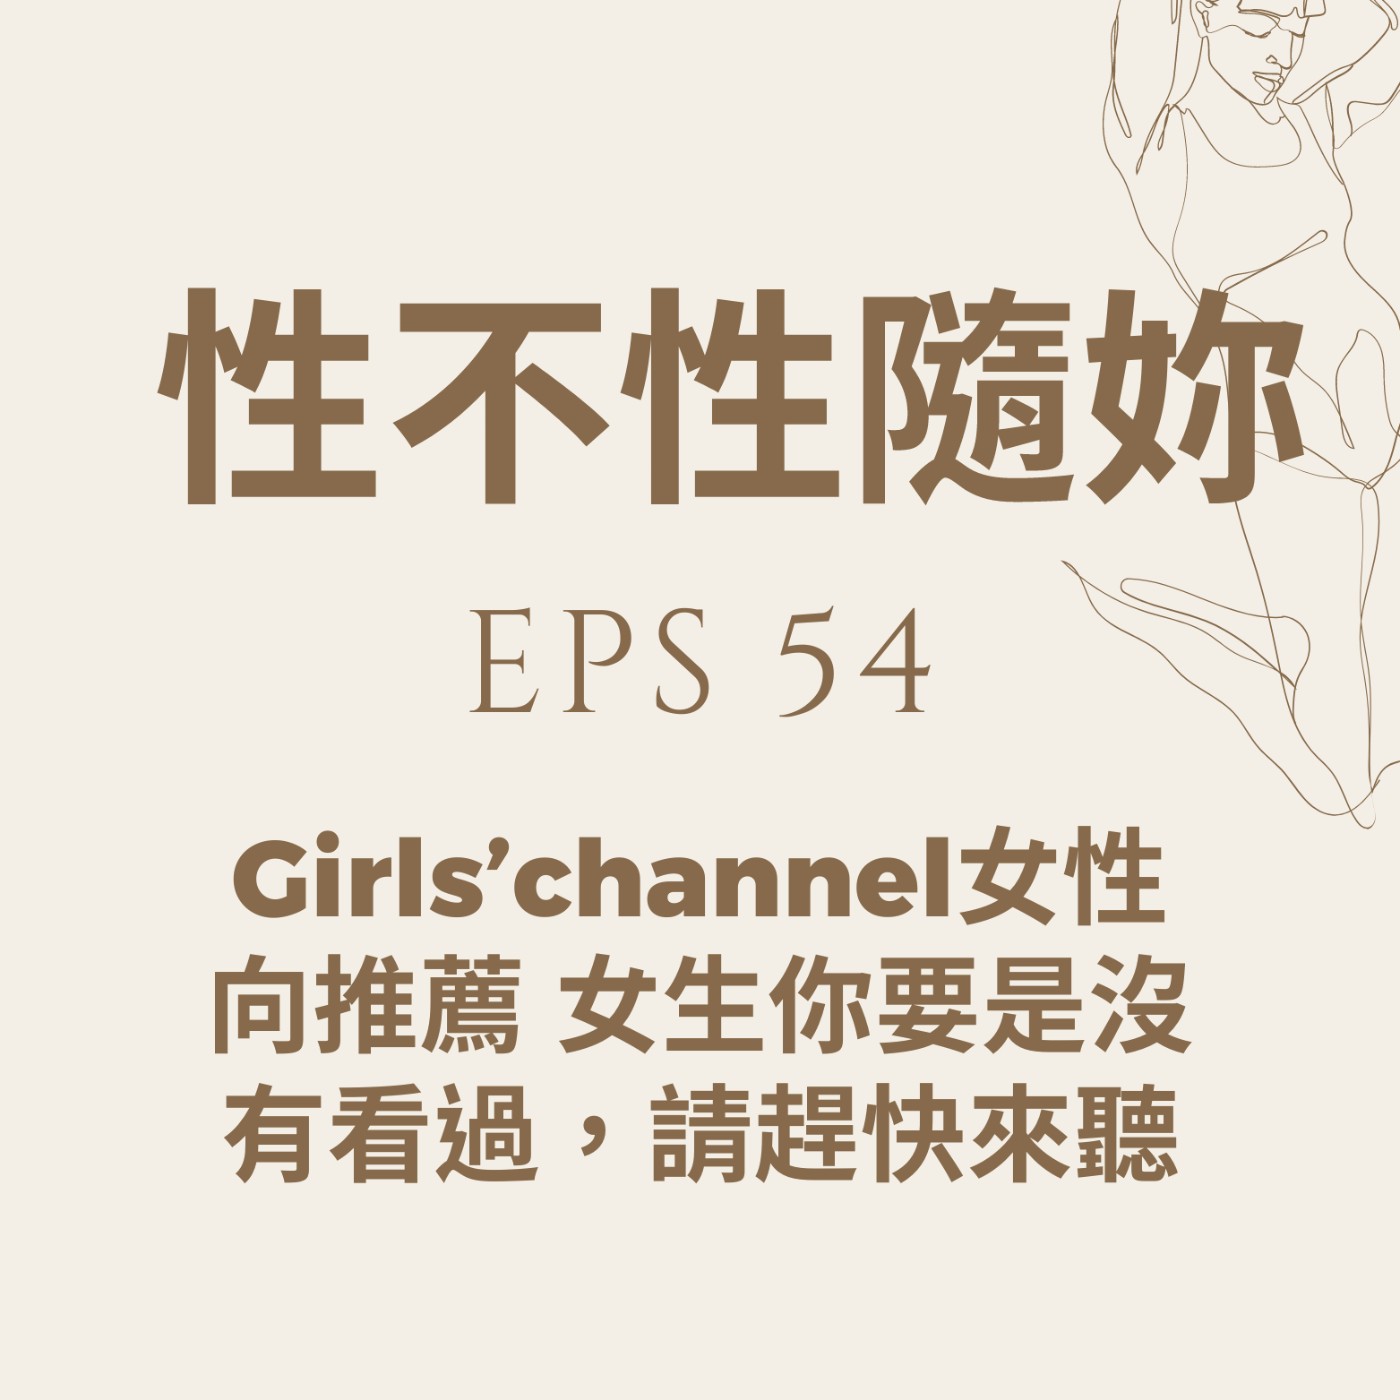 『性不性隨妳 』eps. 54.Girls’channel女性向推薦 女生你要是沒有看過，請趕快來聽